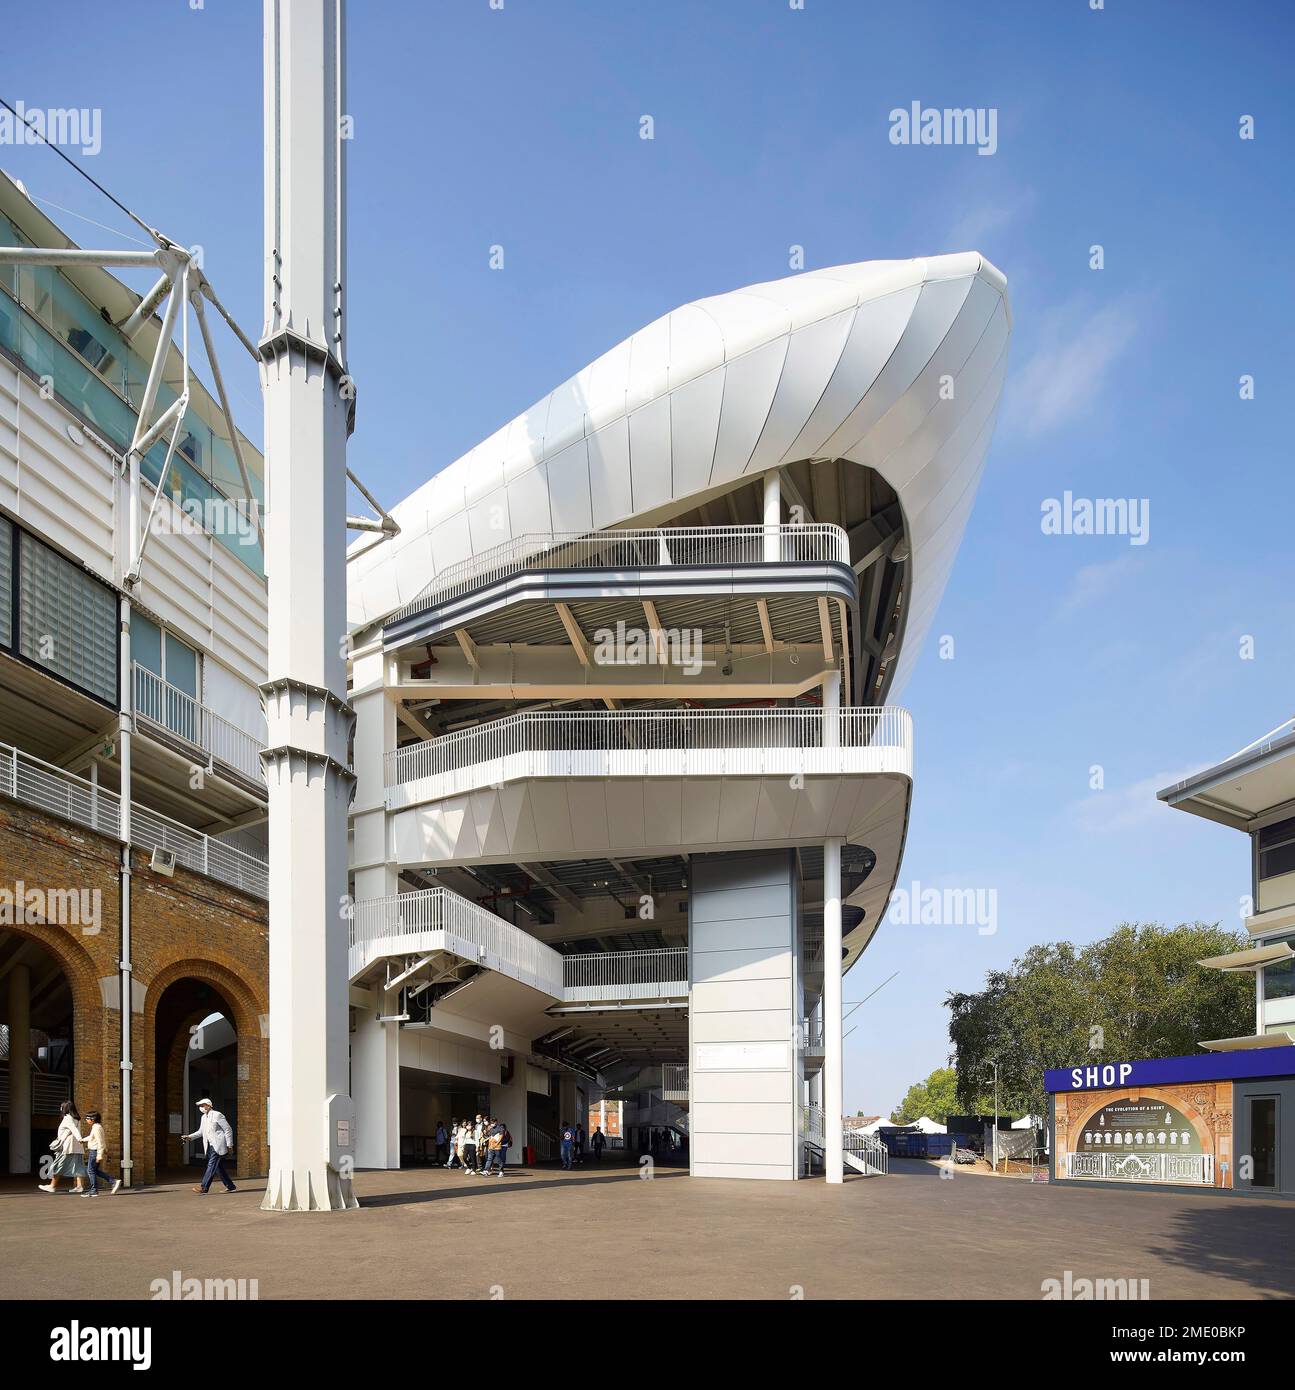 Hintere Höheneinstellung des Stativs mit Kreislaufbereich und Food Court. Lord's Cricket Ground, London, Großbritannien. Architekt: Wilkinson Eyre Architects, 2021 Stockfoto